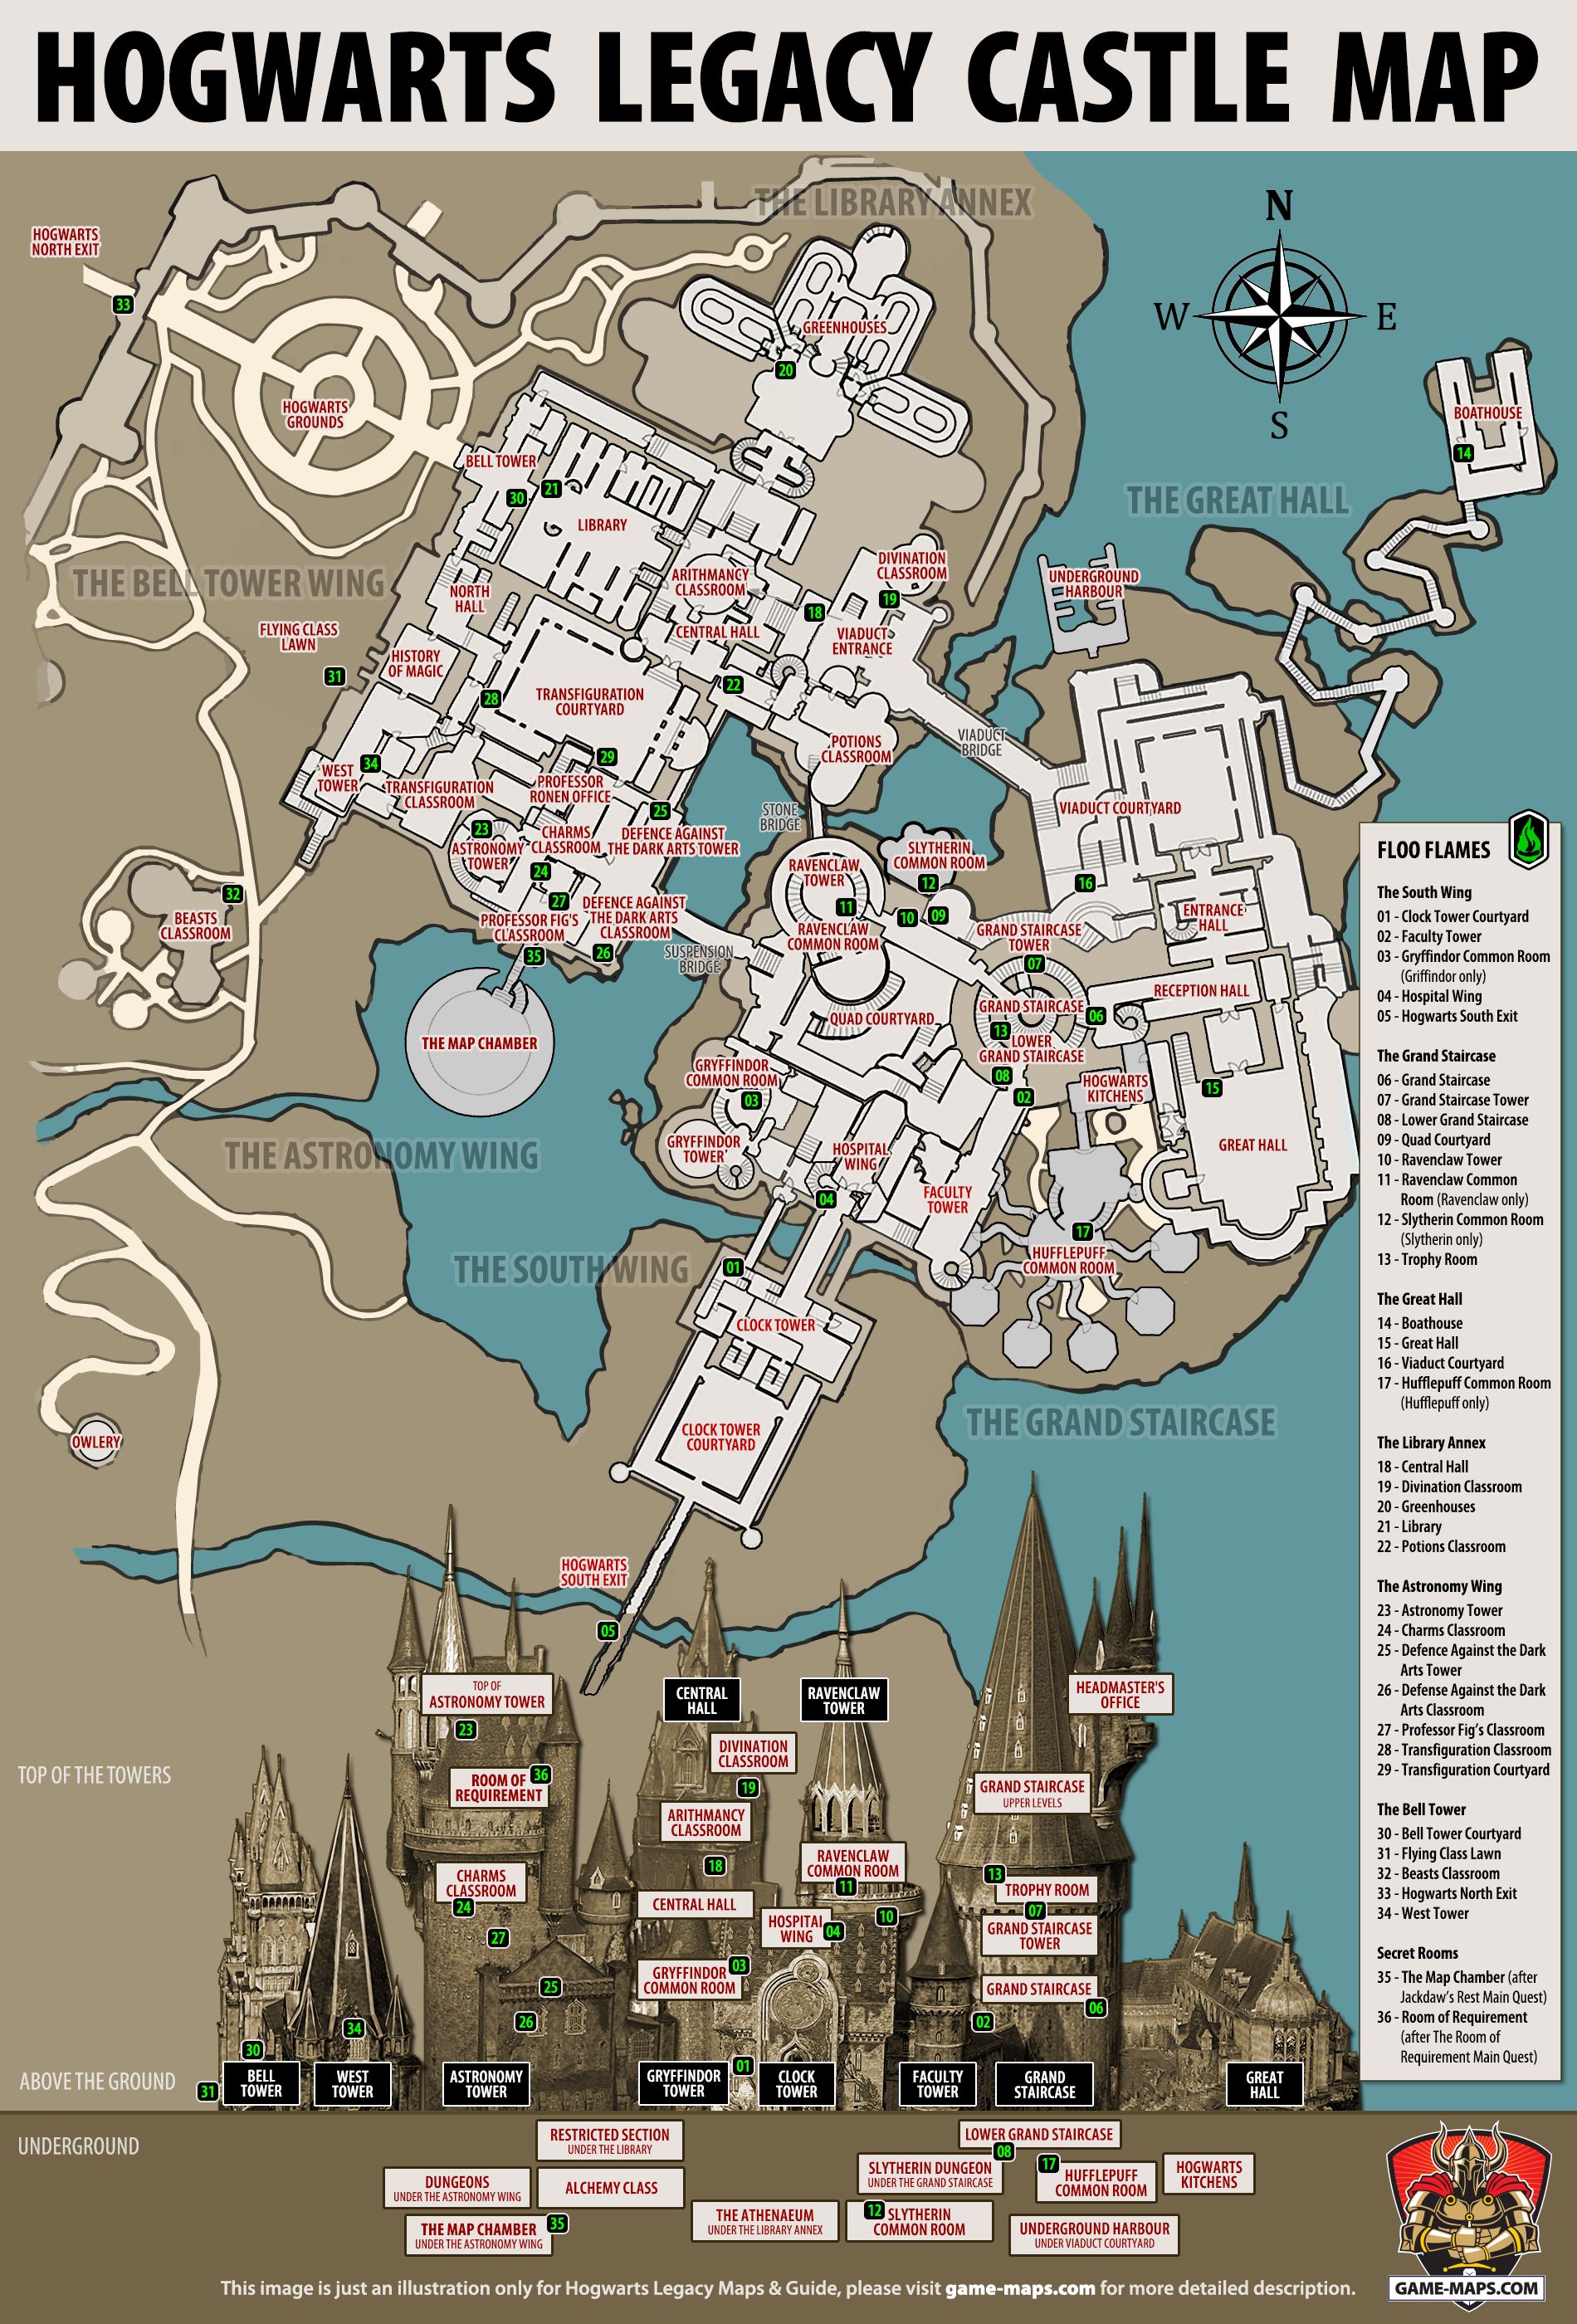 Mapa interativo | Wiki Legacy de Hogwarts, mapa do legado de Hogwarts ...